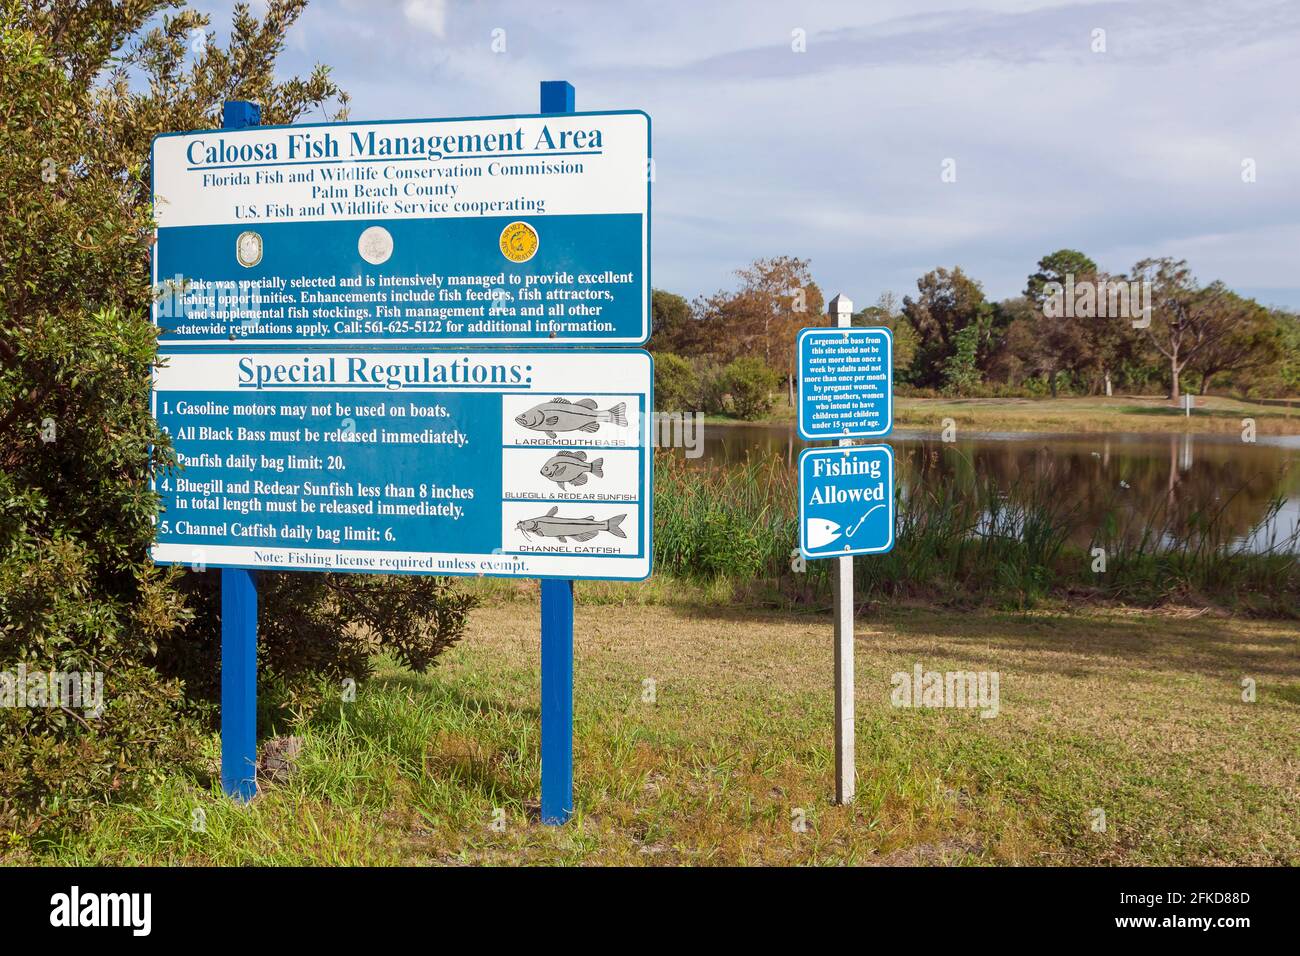 Firme en el Parque Caloosa del Condado de Palm Beach, Florida, para conocer las reglas y regulaciones de manejo de peces. Foto de stock